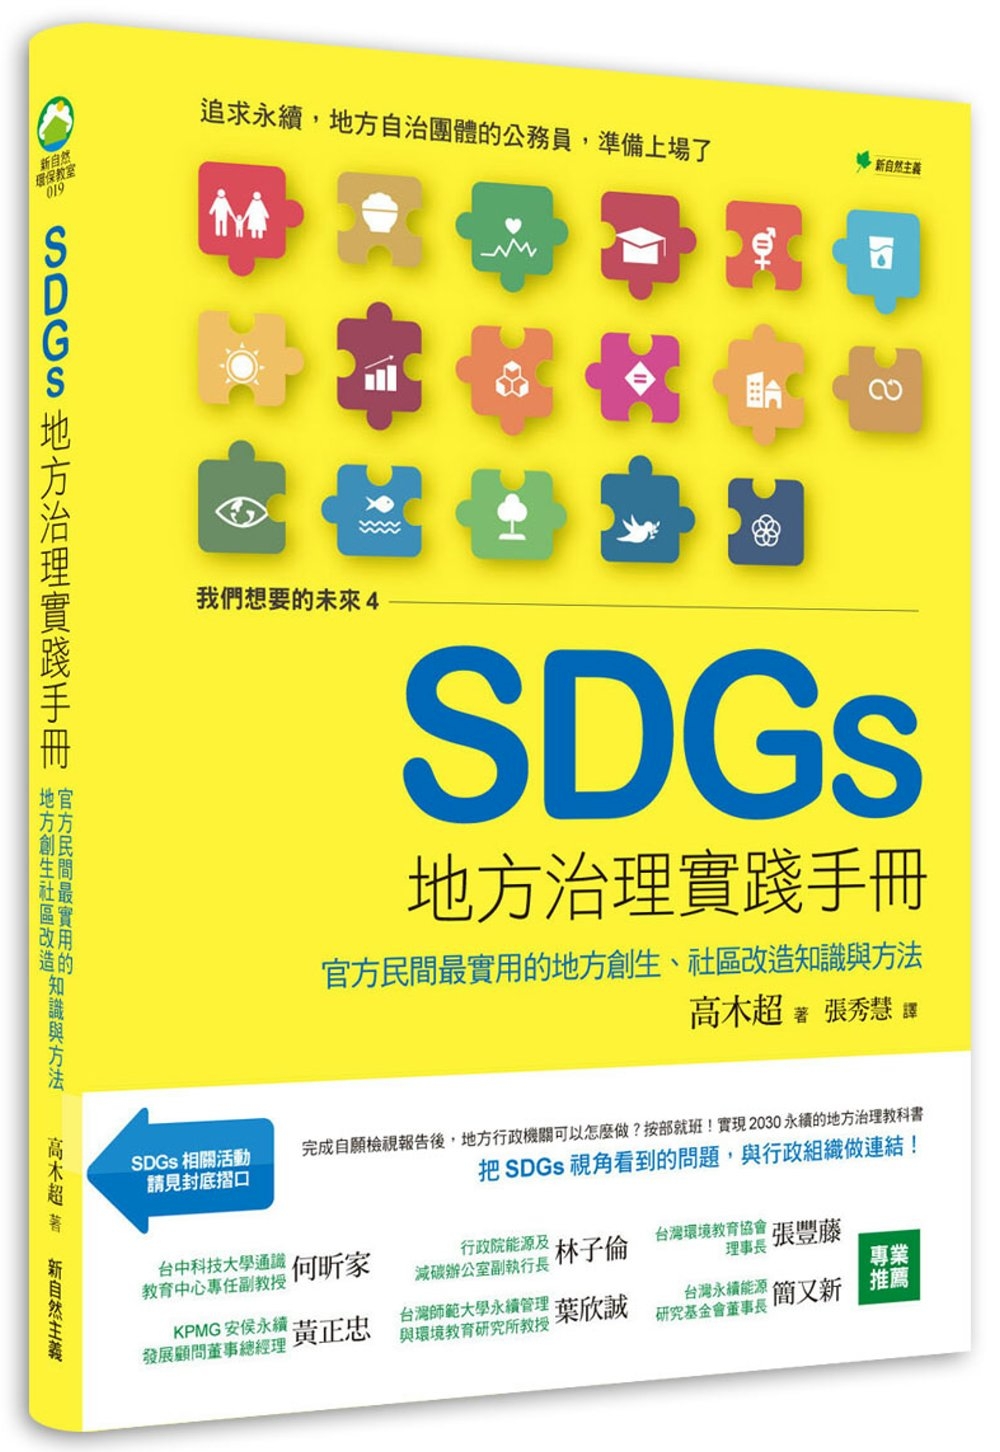 我們想要的未來④SDGs地方治理實踐手冊：地方自治現場推動SDGs最實用的知識與方法